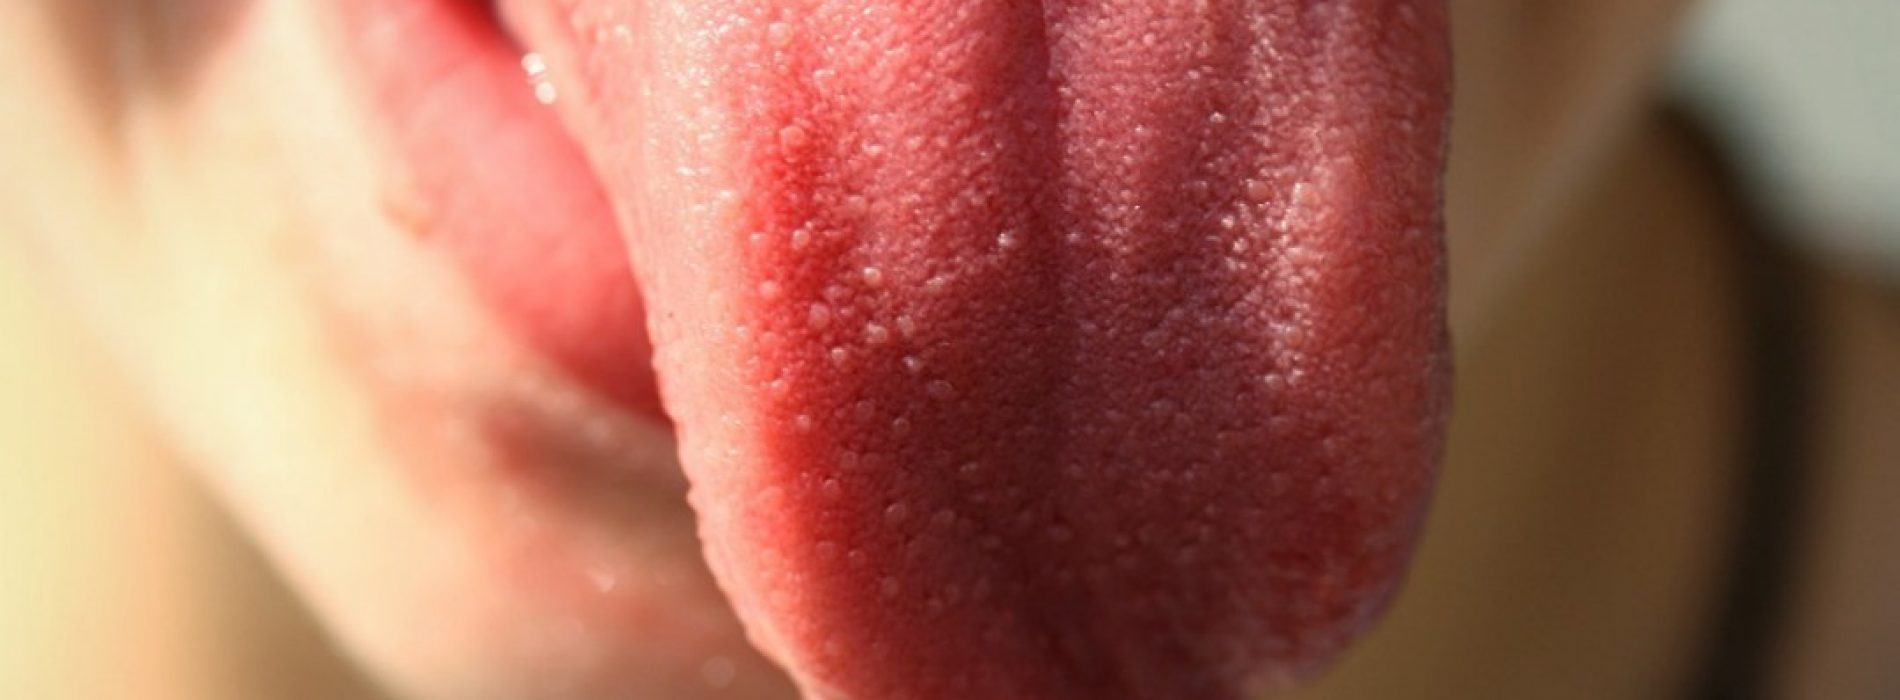 Prueba de saliva permite saber si tienes el Virus del Papiloma Humano